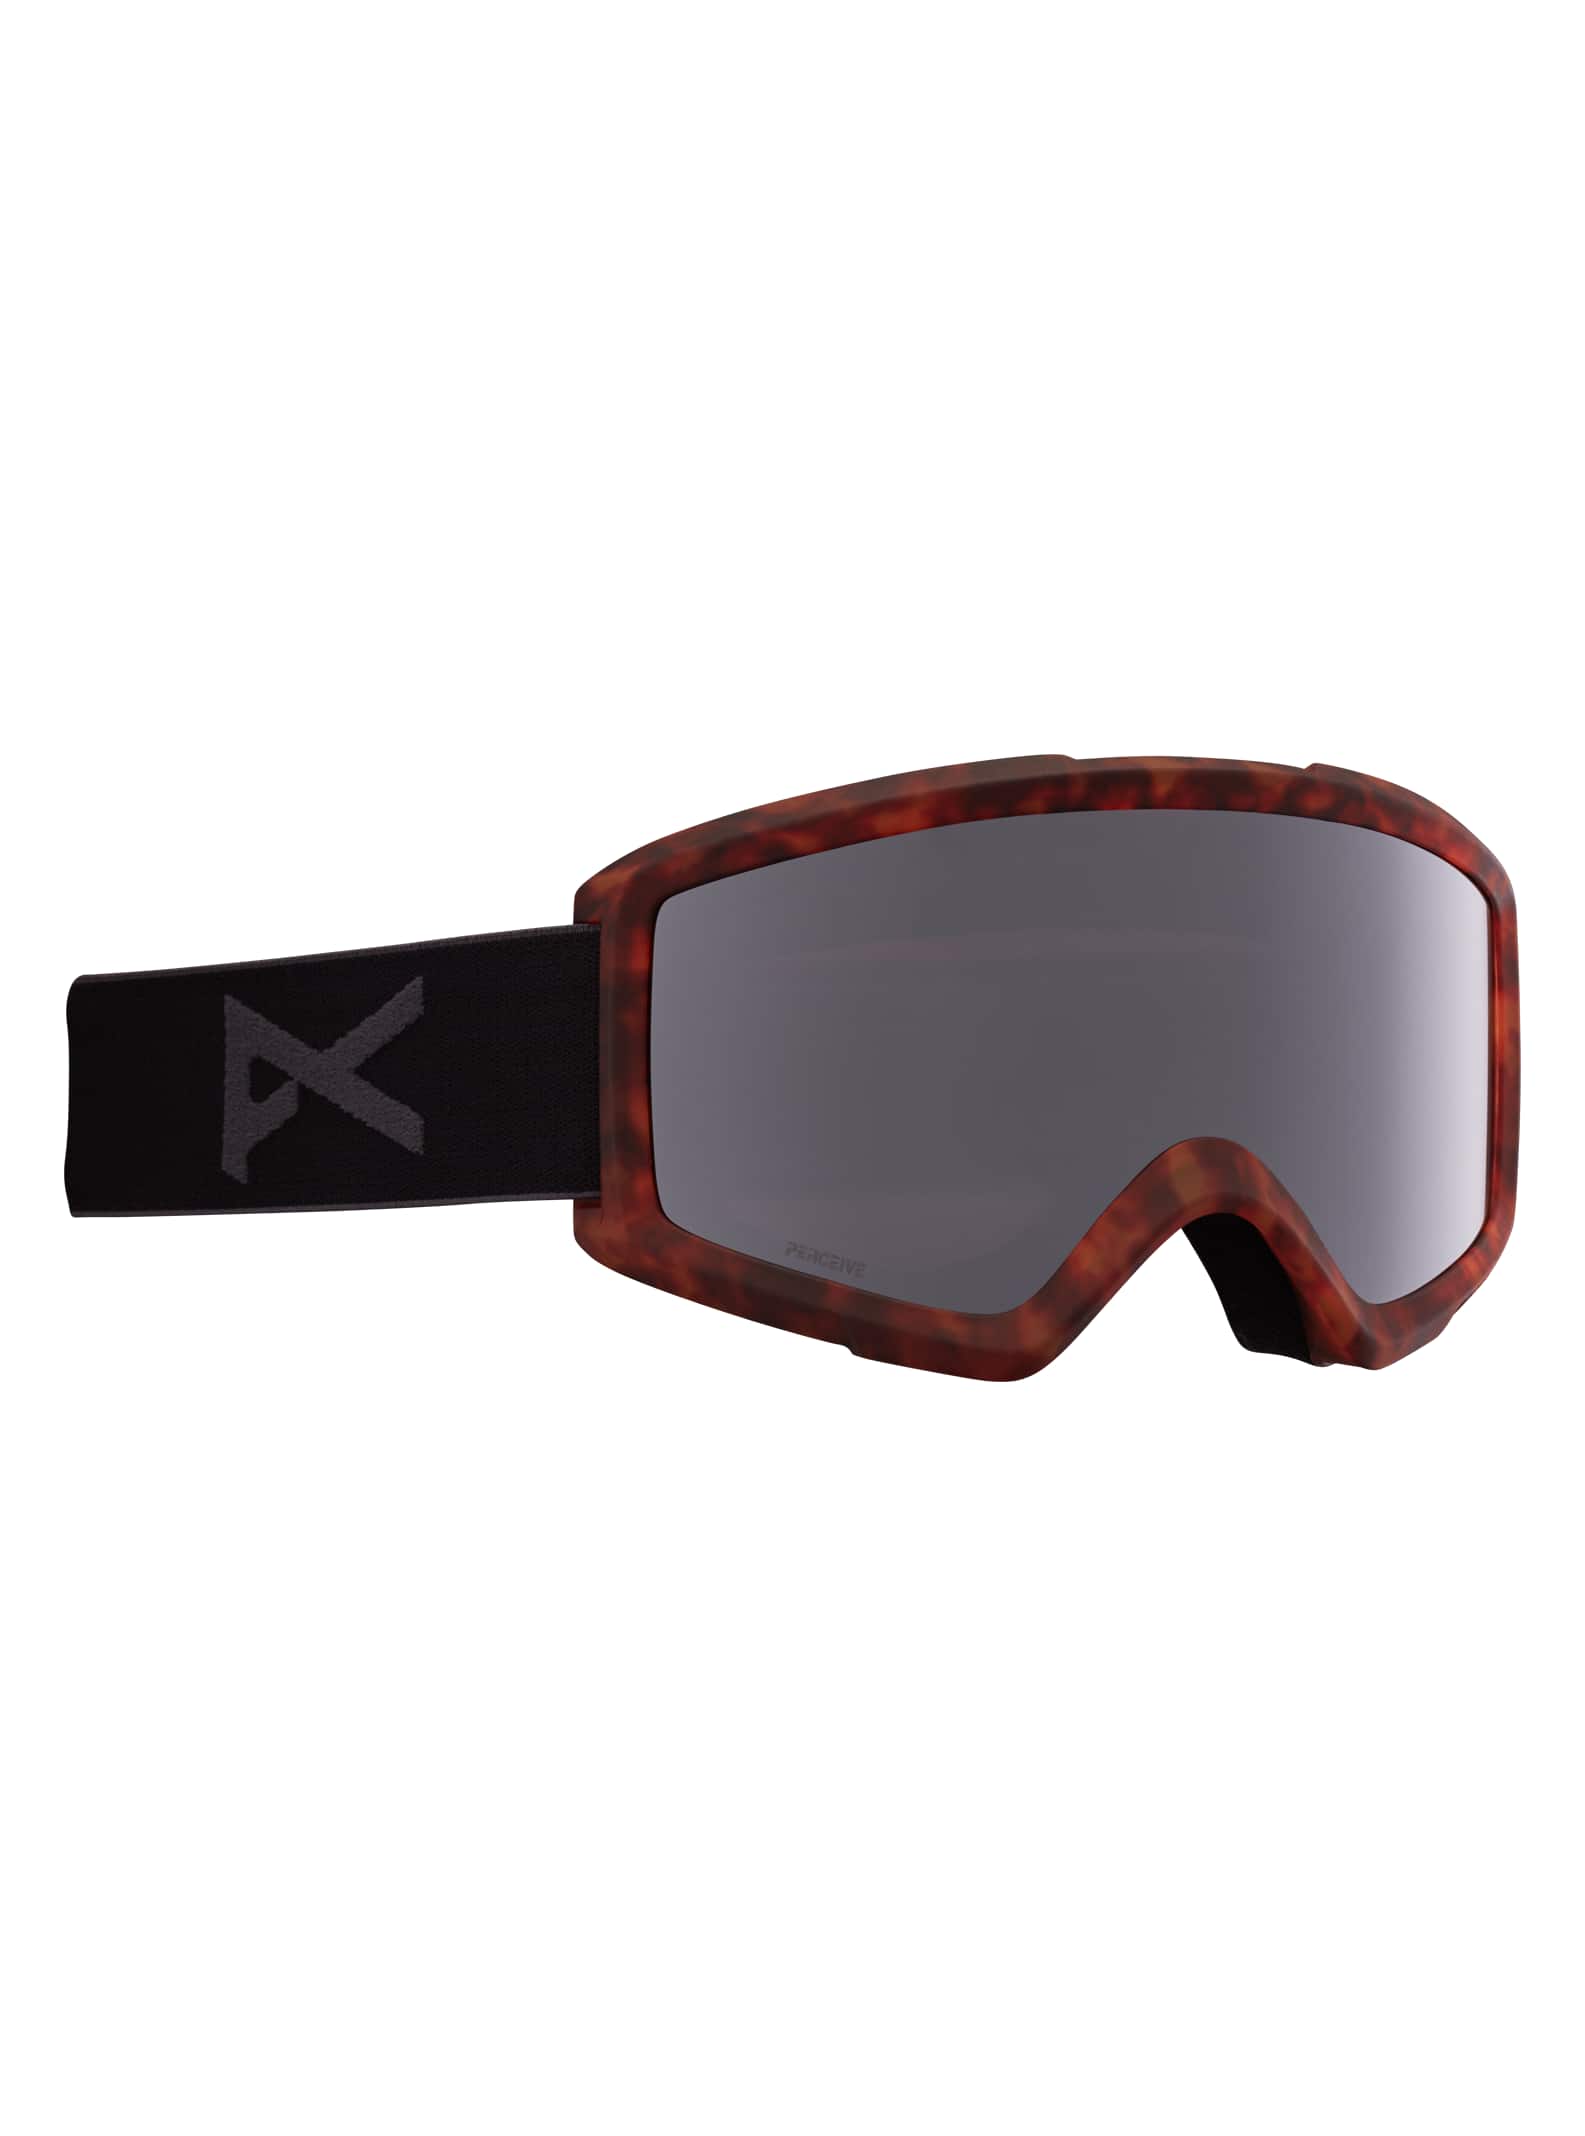 Ski- und Snowboardbrillen und Brillengläser für Herren | Ski- und  Snowboardbrillen für Herren | Anon Optics CH